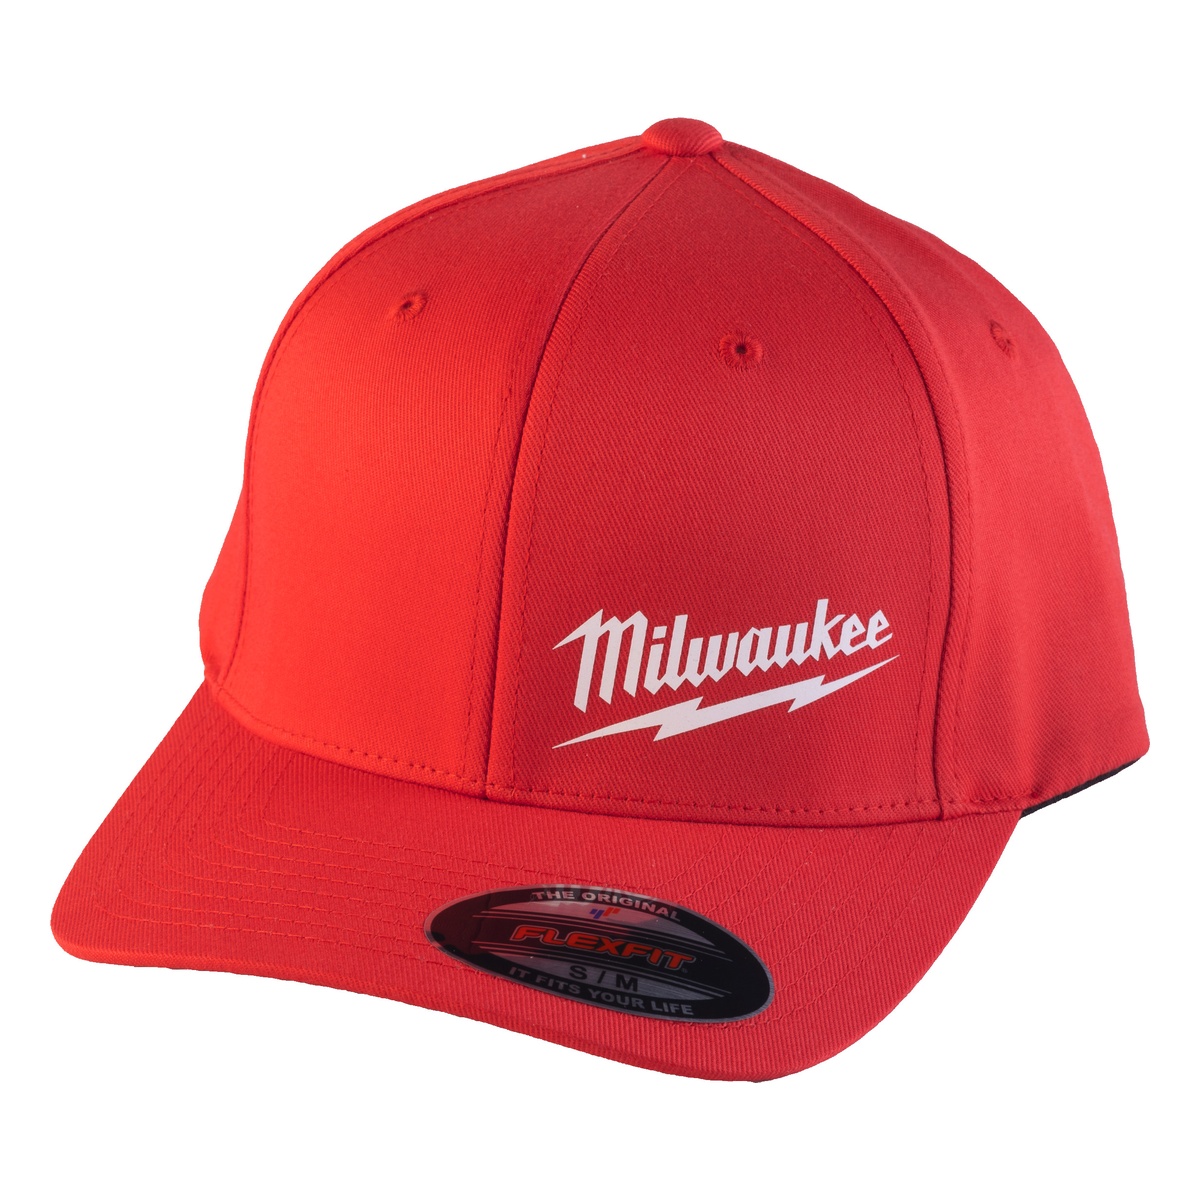 Milwaukee Baseball Kappe rot Größe L/XL mit UV-Schutz BCSRD-L/XL - 1 Stk.